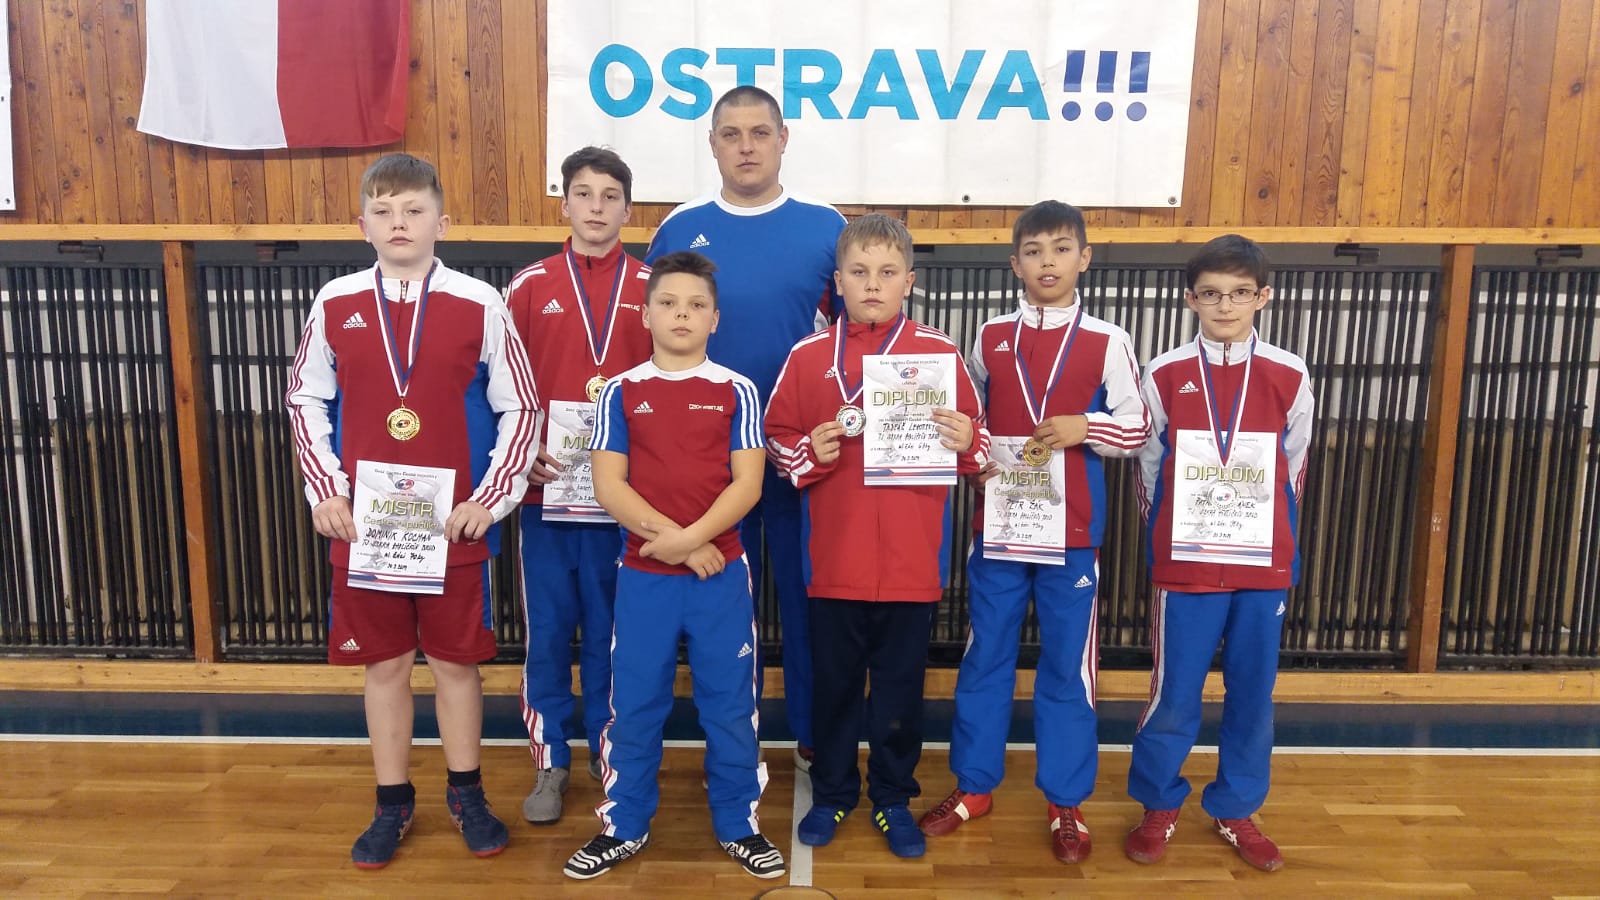 V sobotu 30.března se konalo ve Vítkovicích Mistrovství České republiky v zápase volný styl mladších žáků 